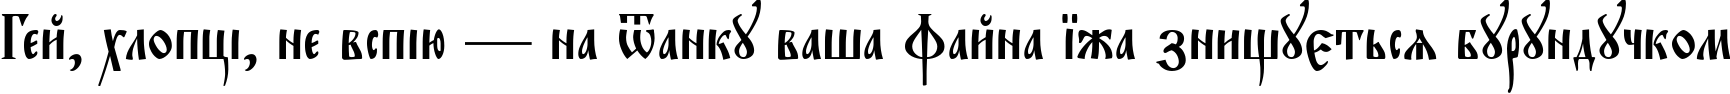 Пример написания шрифтом EvangelieTT текста на украинском